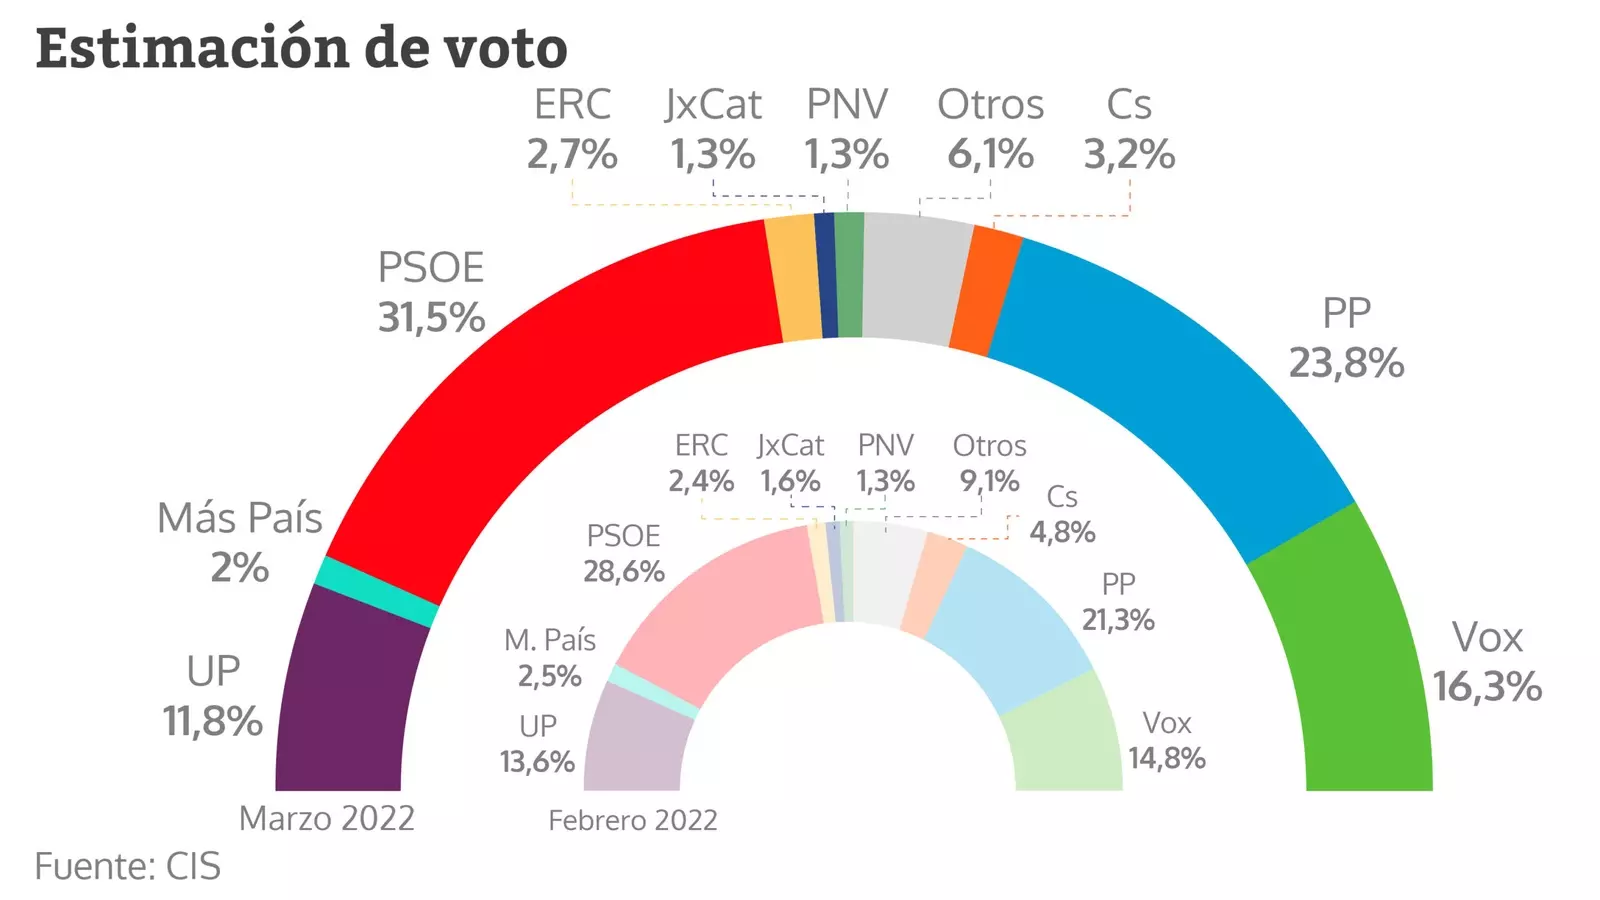 Estimación de voto en marzo de 2022 según el CIS